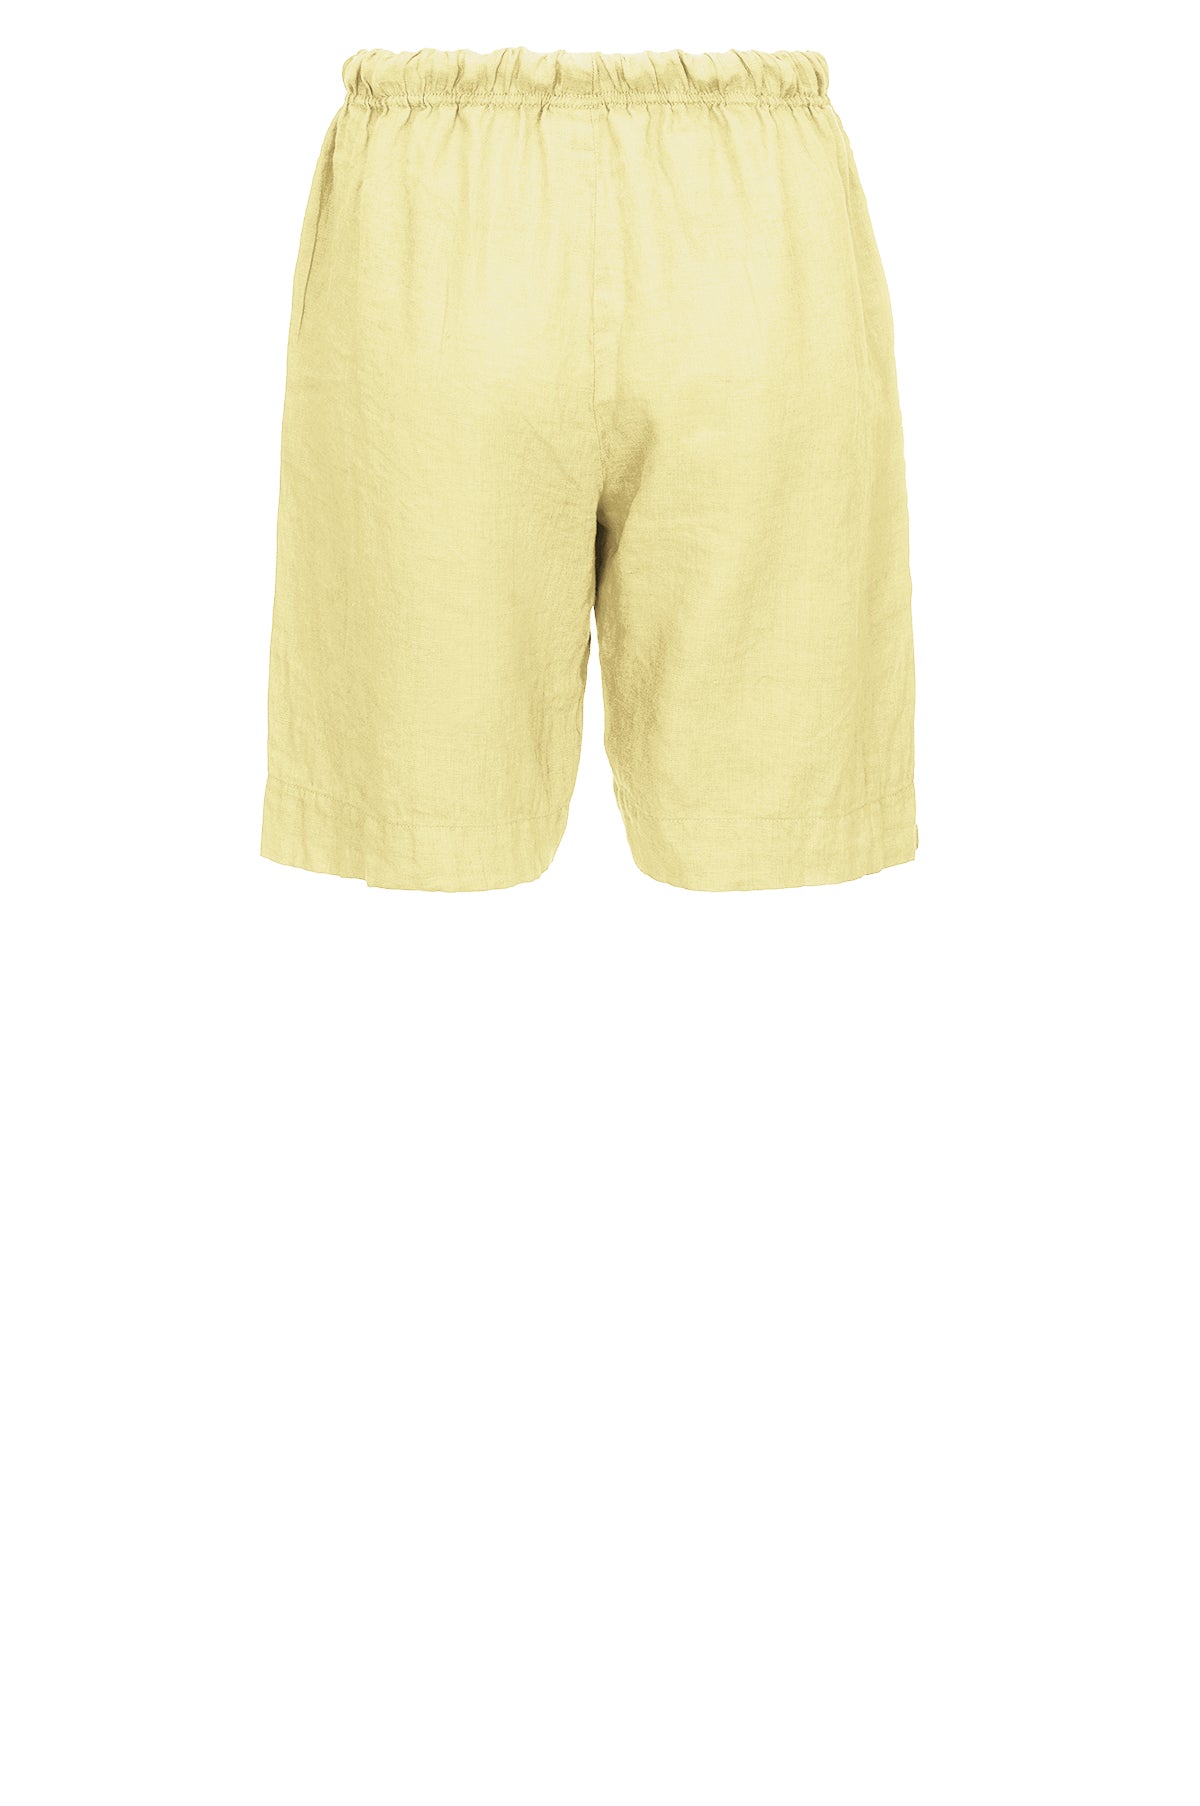 LUXZUZ // ONE TWO Lailai Shorts Shorts 103 Lemonade